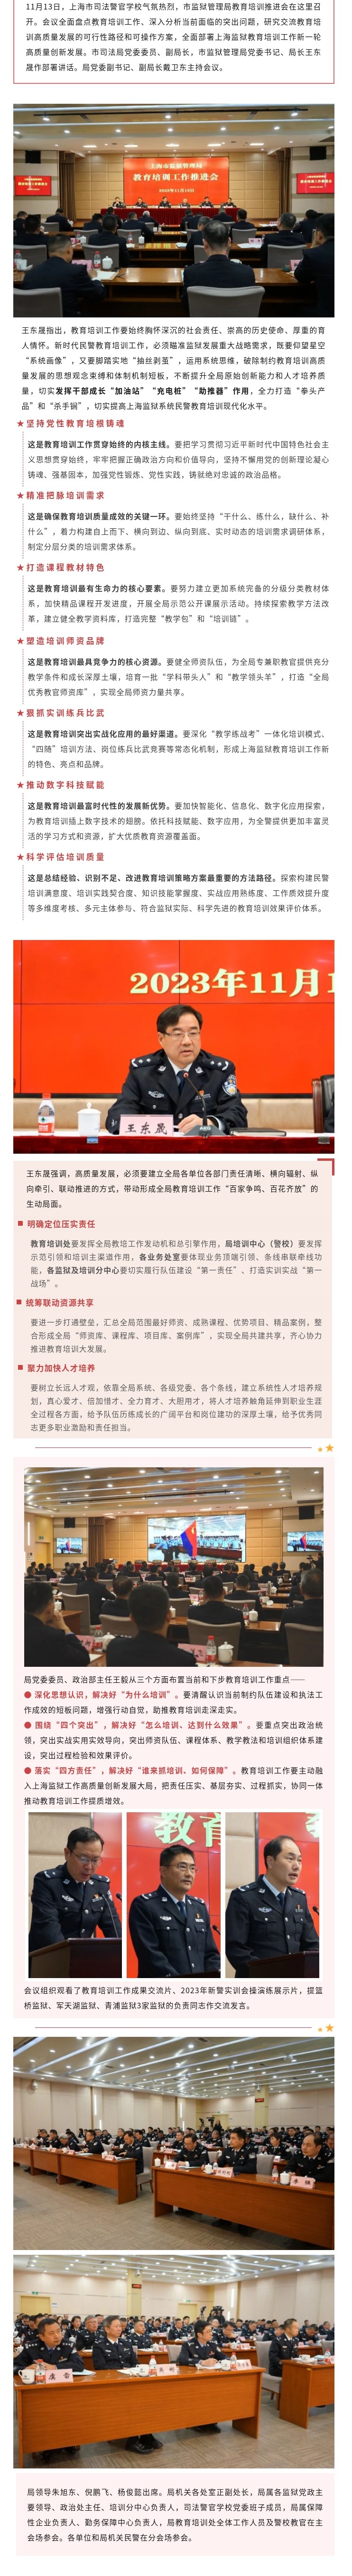 上海监狱教育培训工作规划计划.jpg